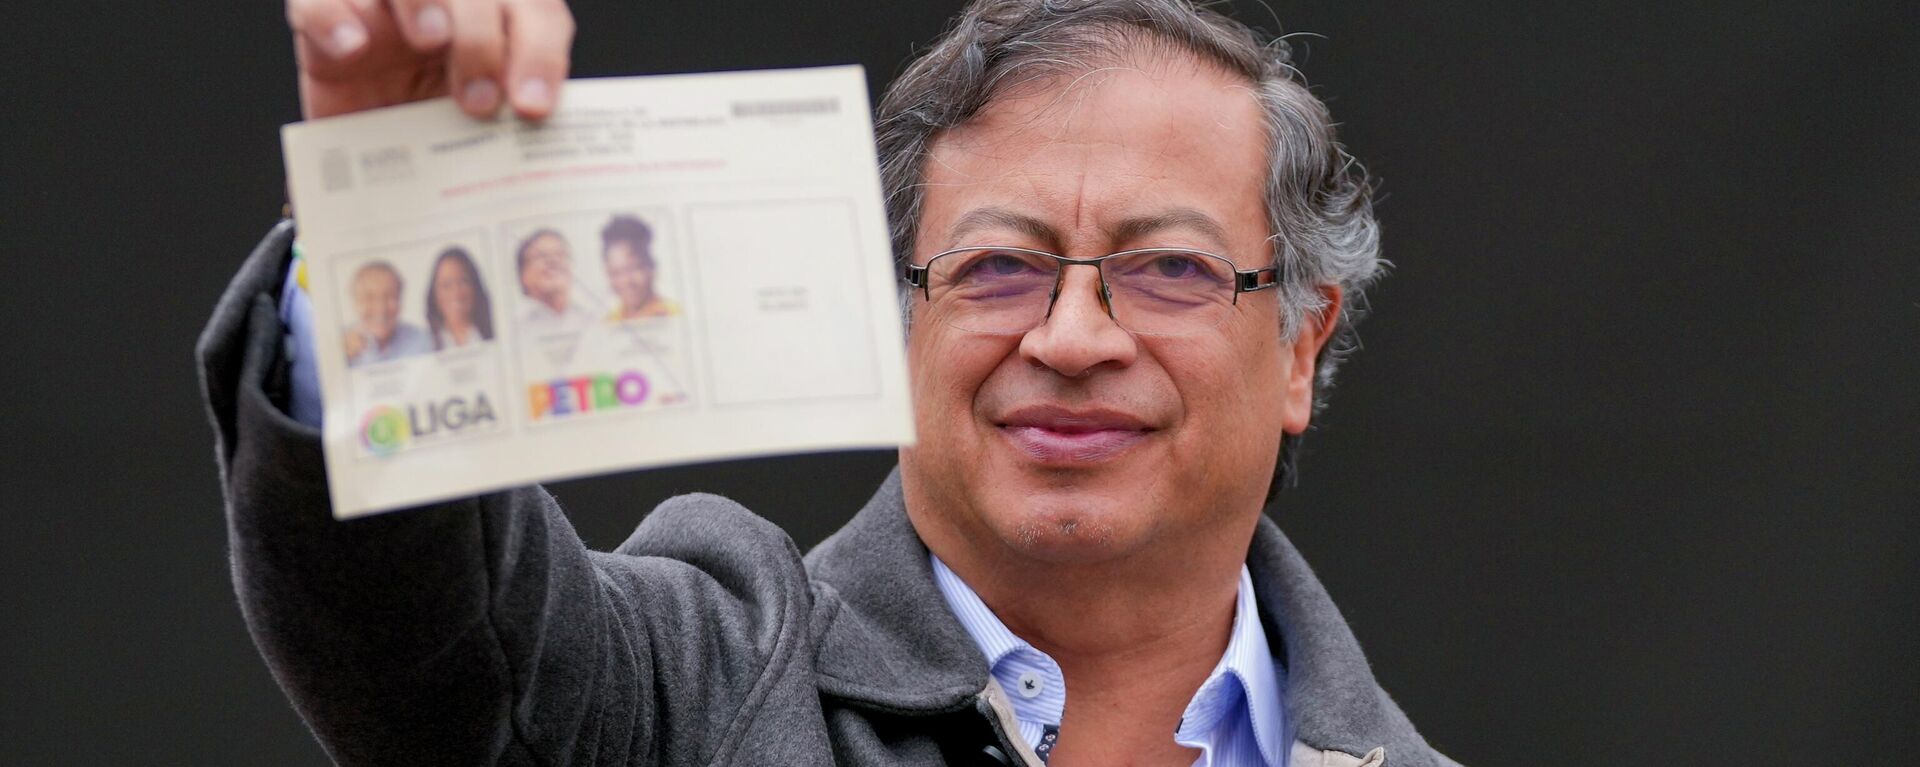 Gustavo Petro vota durante eleições presidenciais da Colômbia, em 19 de junho de 2022 - Sputnik Brasil, 1920, 19.06.2022